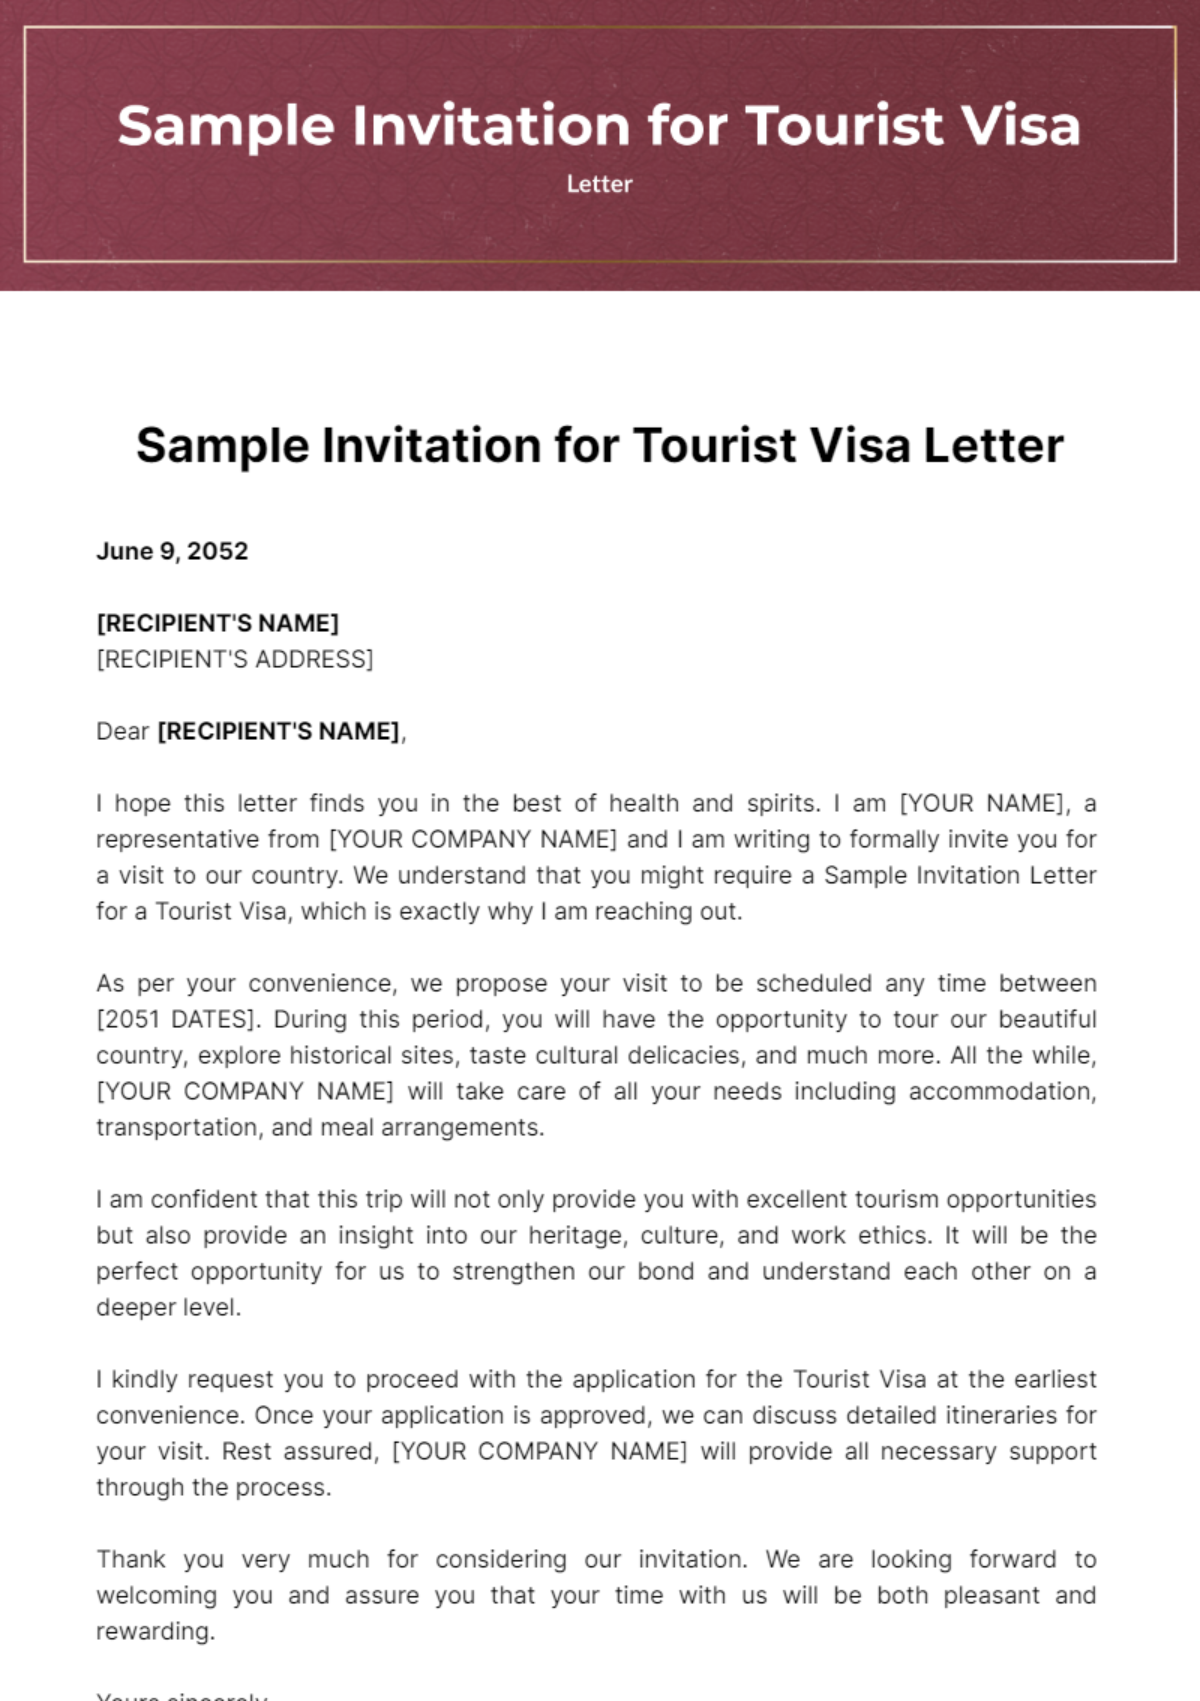 Sample Invitation Letter for Tourist Visa Template